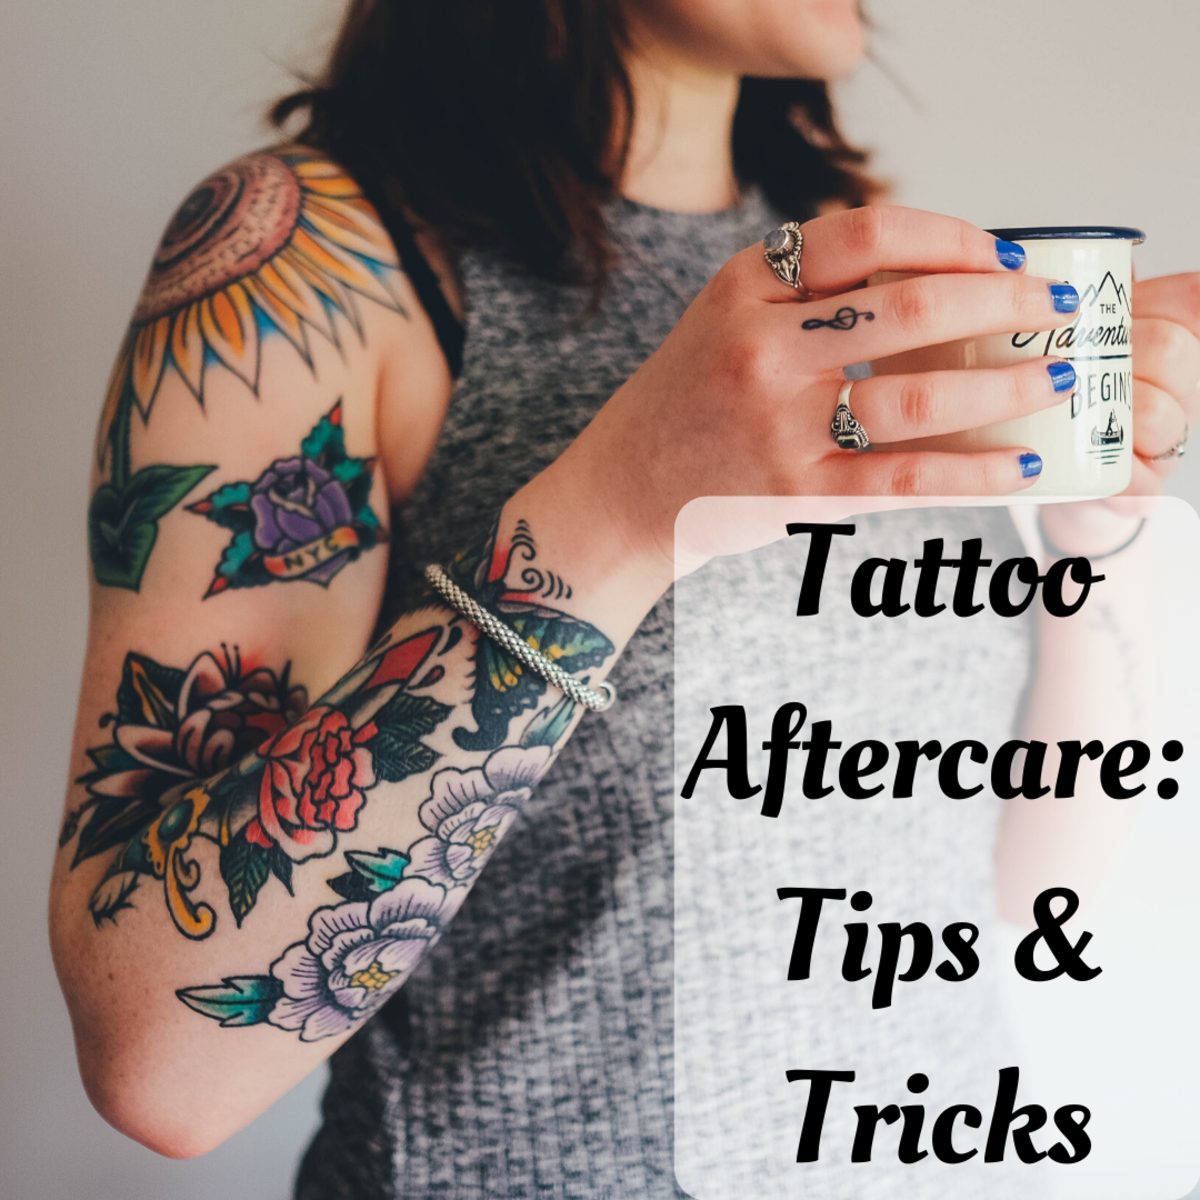 Olvassa el, hogy mindent megtudjon a tetoválás utókezelési tippjeiről.